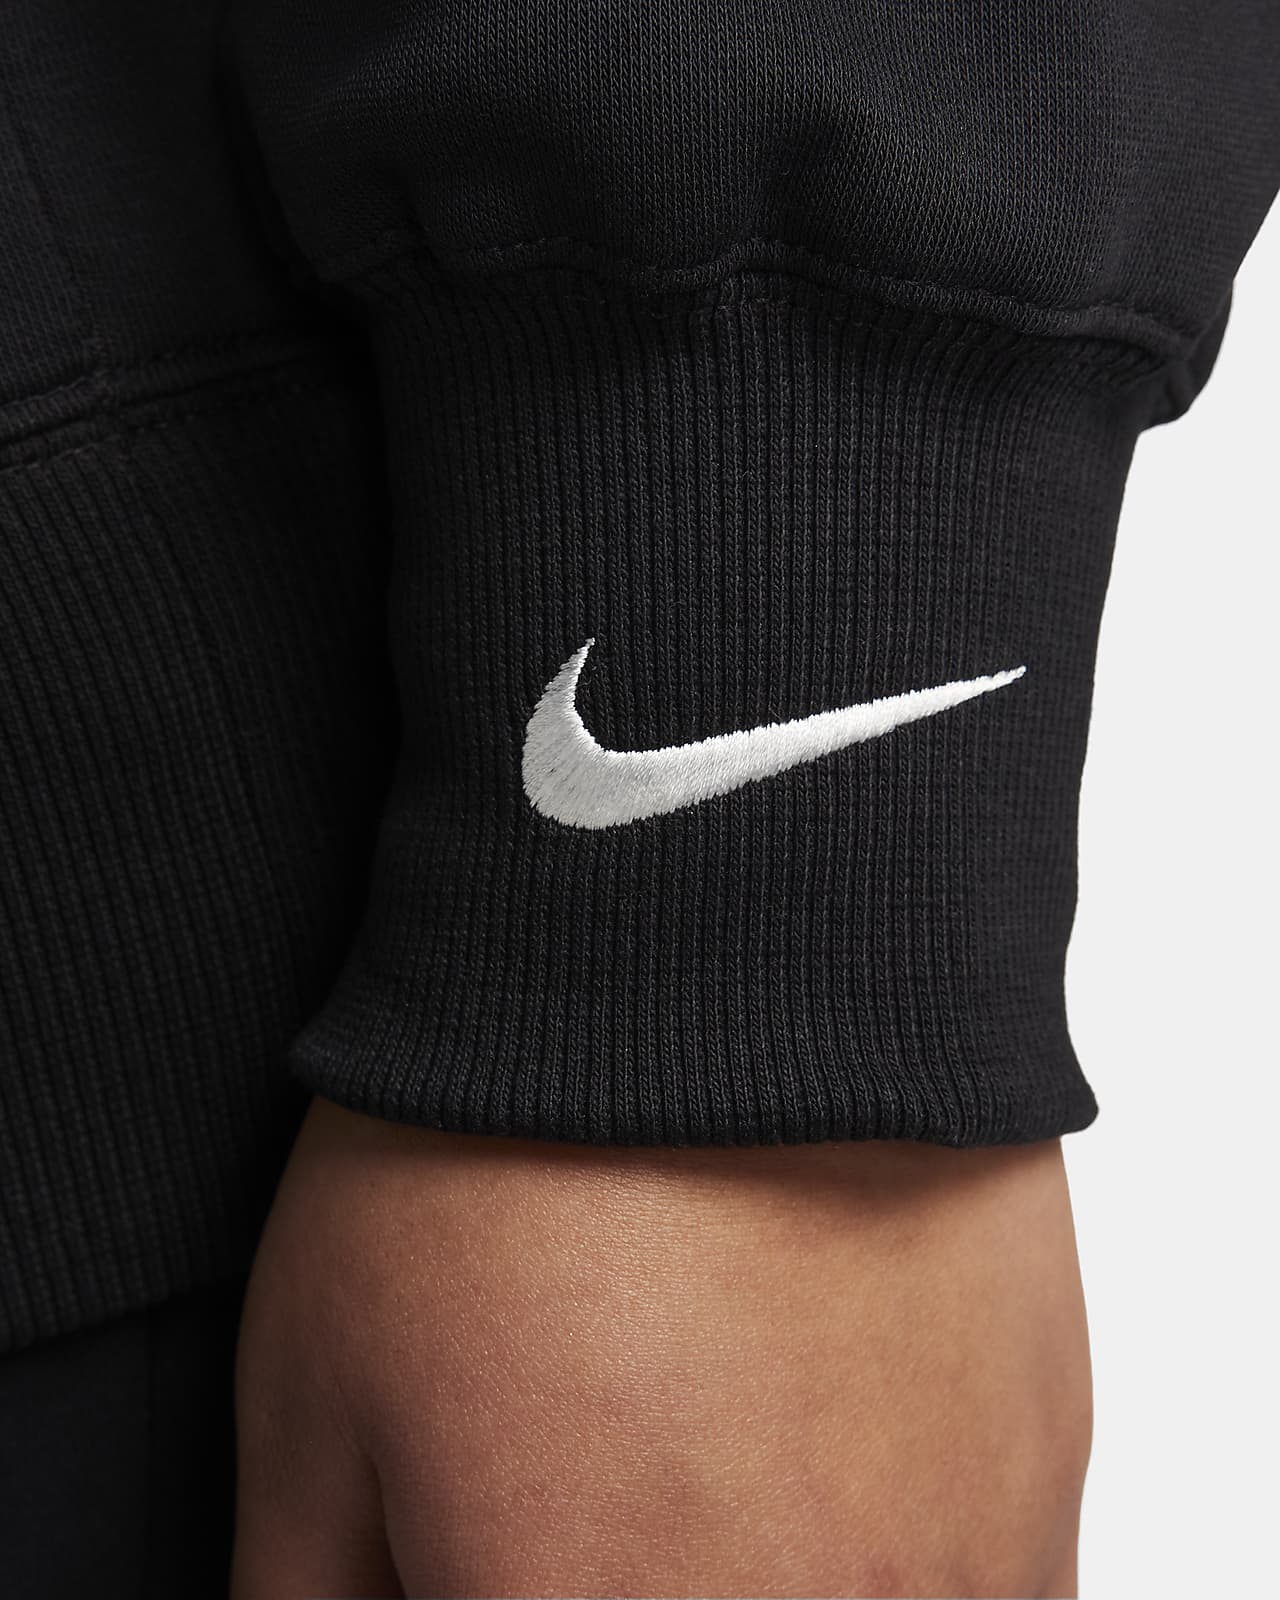 Nike Sportswear Phoenix Fleece Women's Oversized Crew-Neck Logo Sweatshirt (Plus  Size). Nike CA